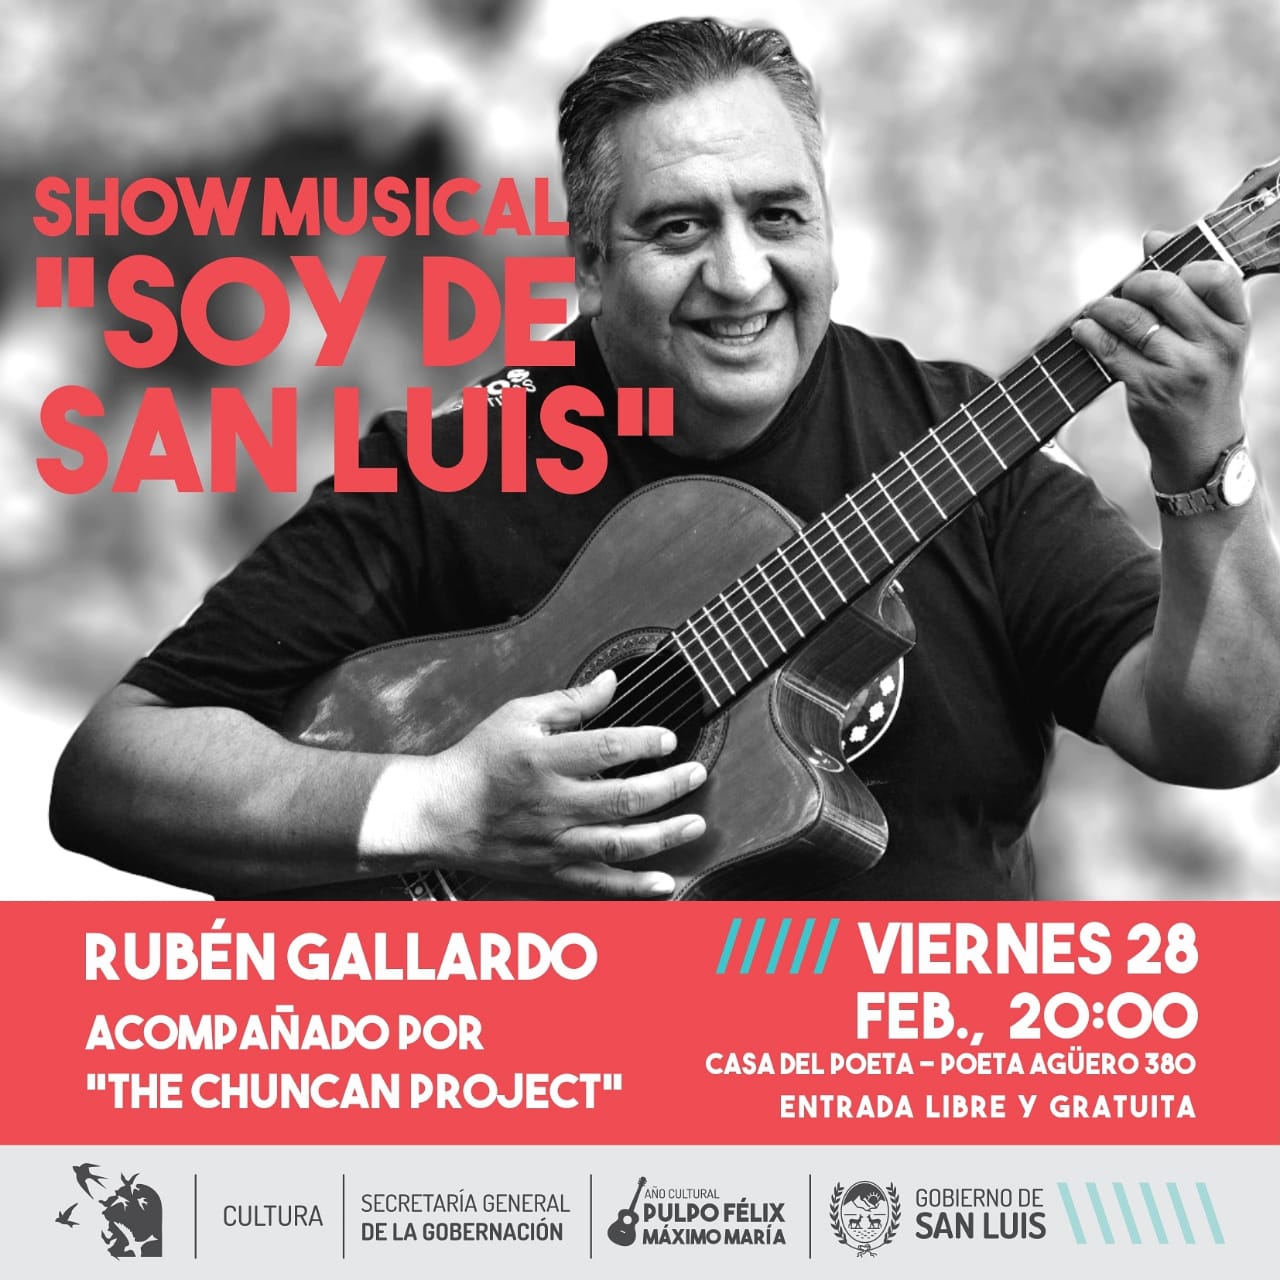 Rubén Gallardo presenta “Soy de San Luis” en la Casa del Poeta